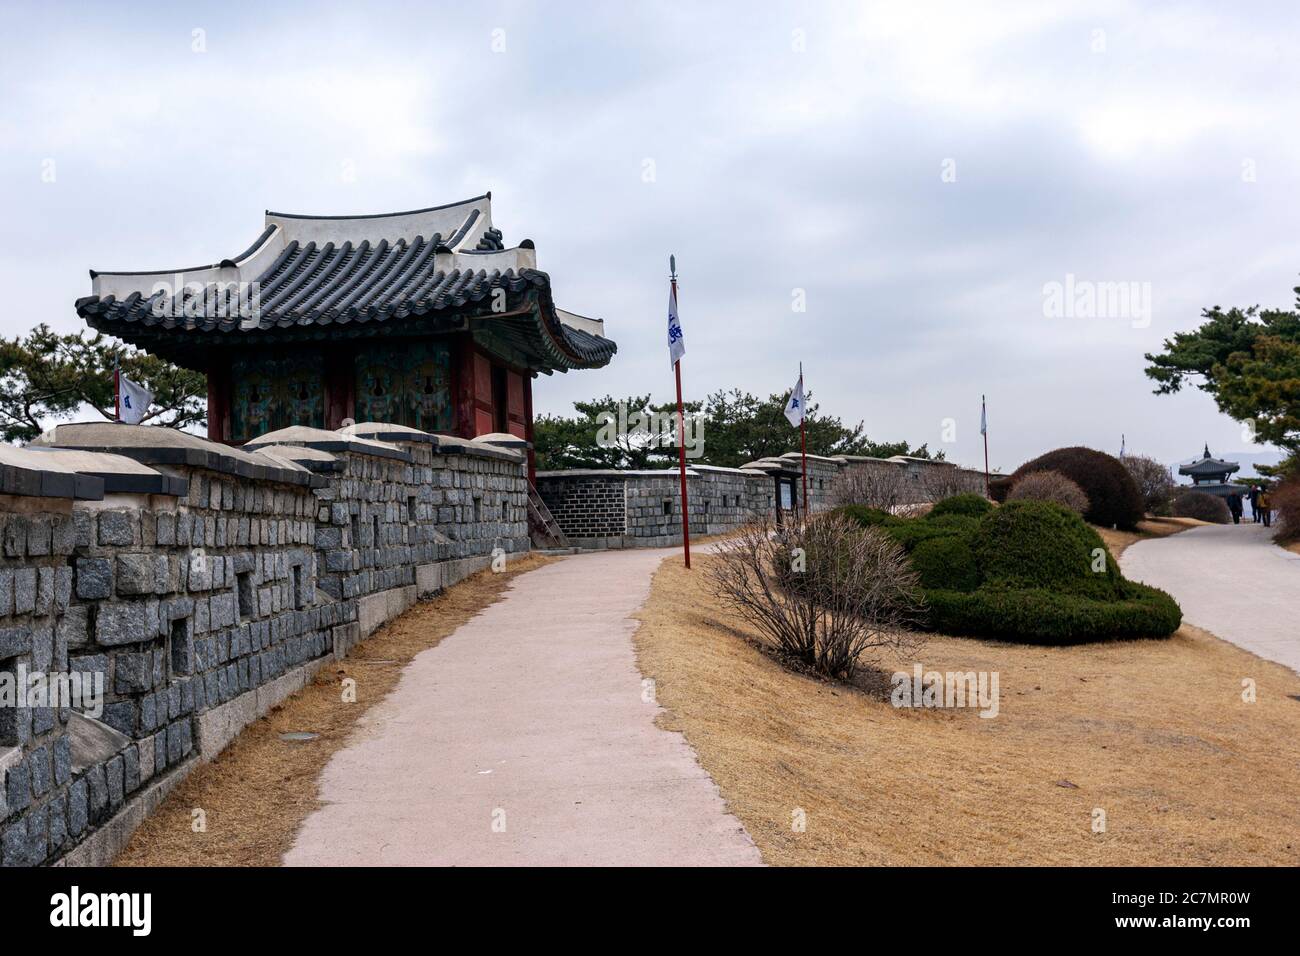 Seoporu, Hwaseong Fortress, Suwon, Gyeonggi Province, South Korea Stock Photo